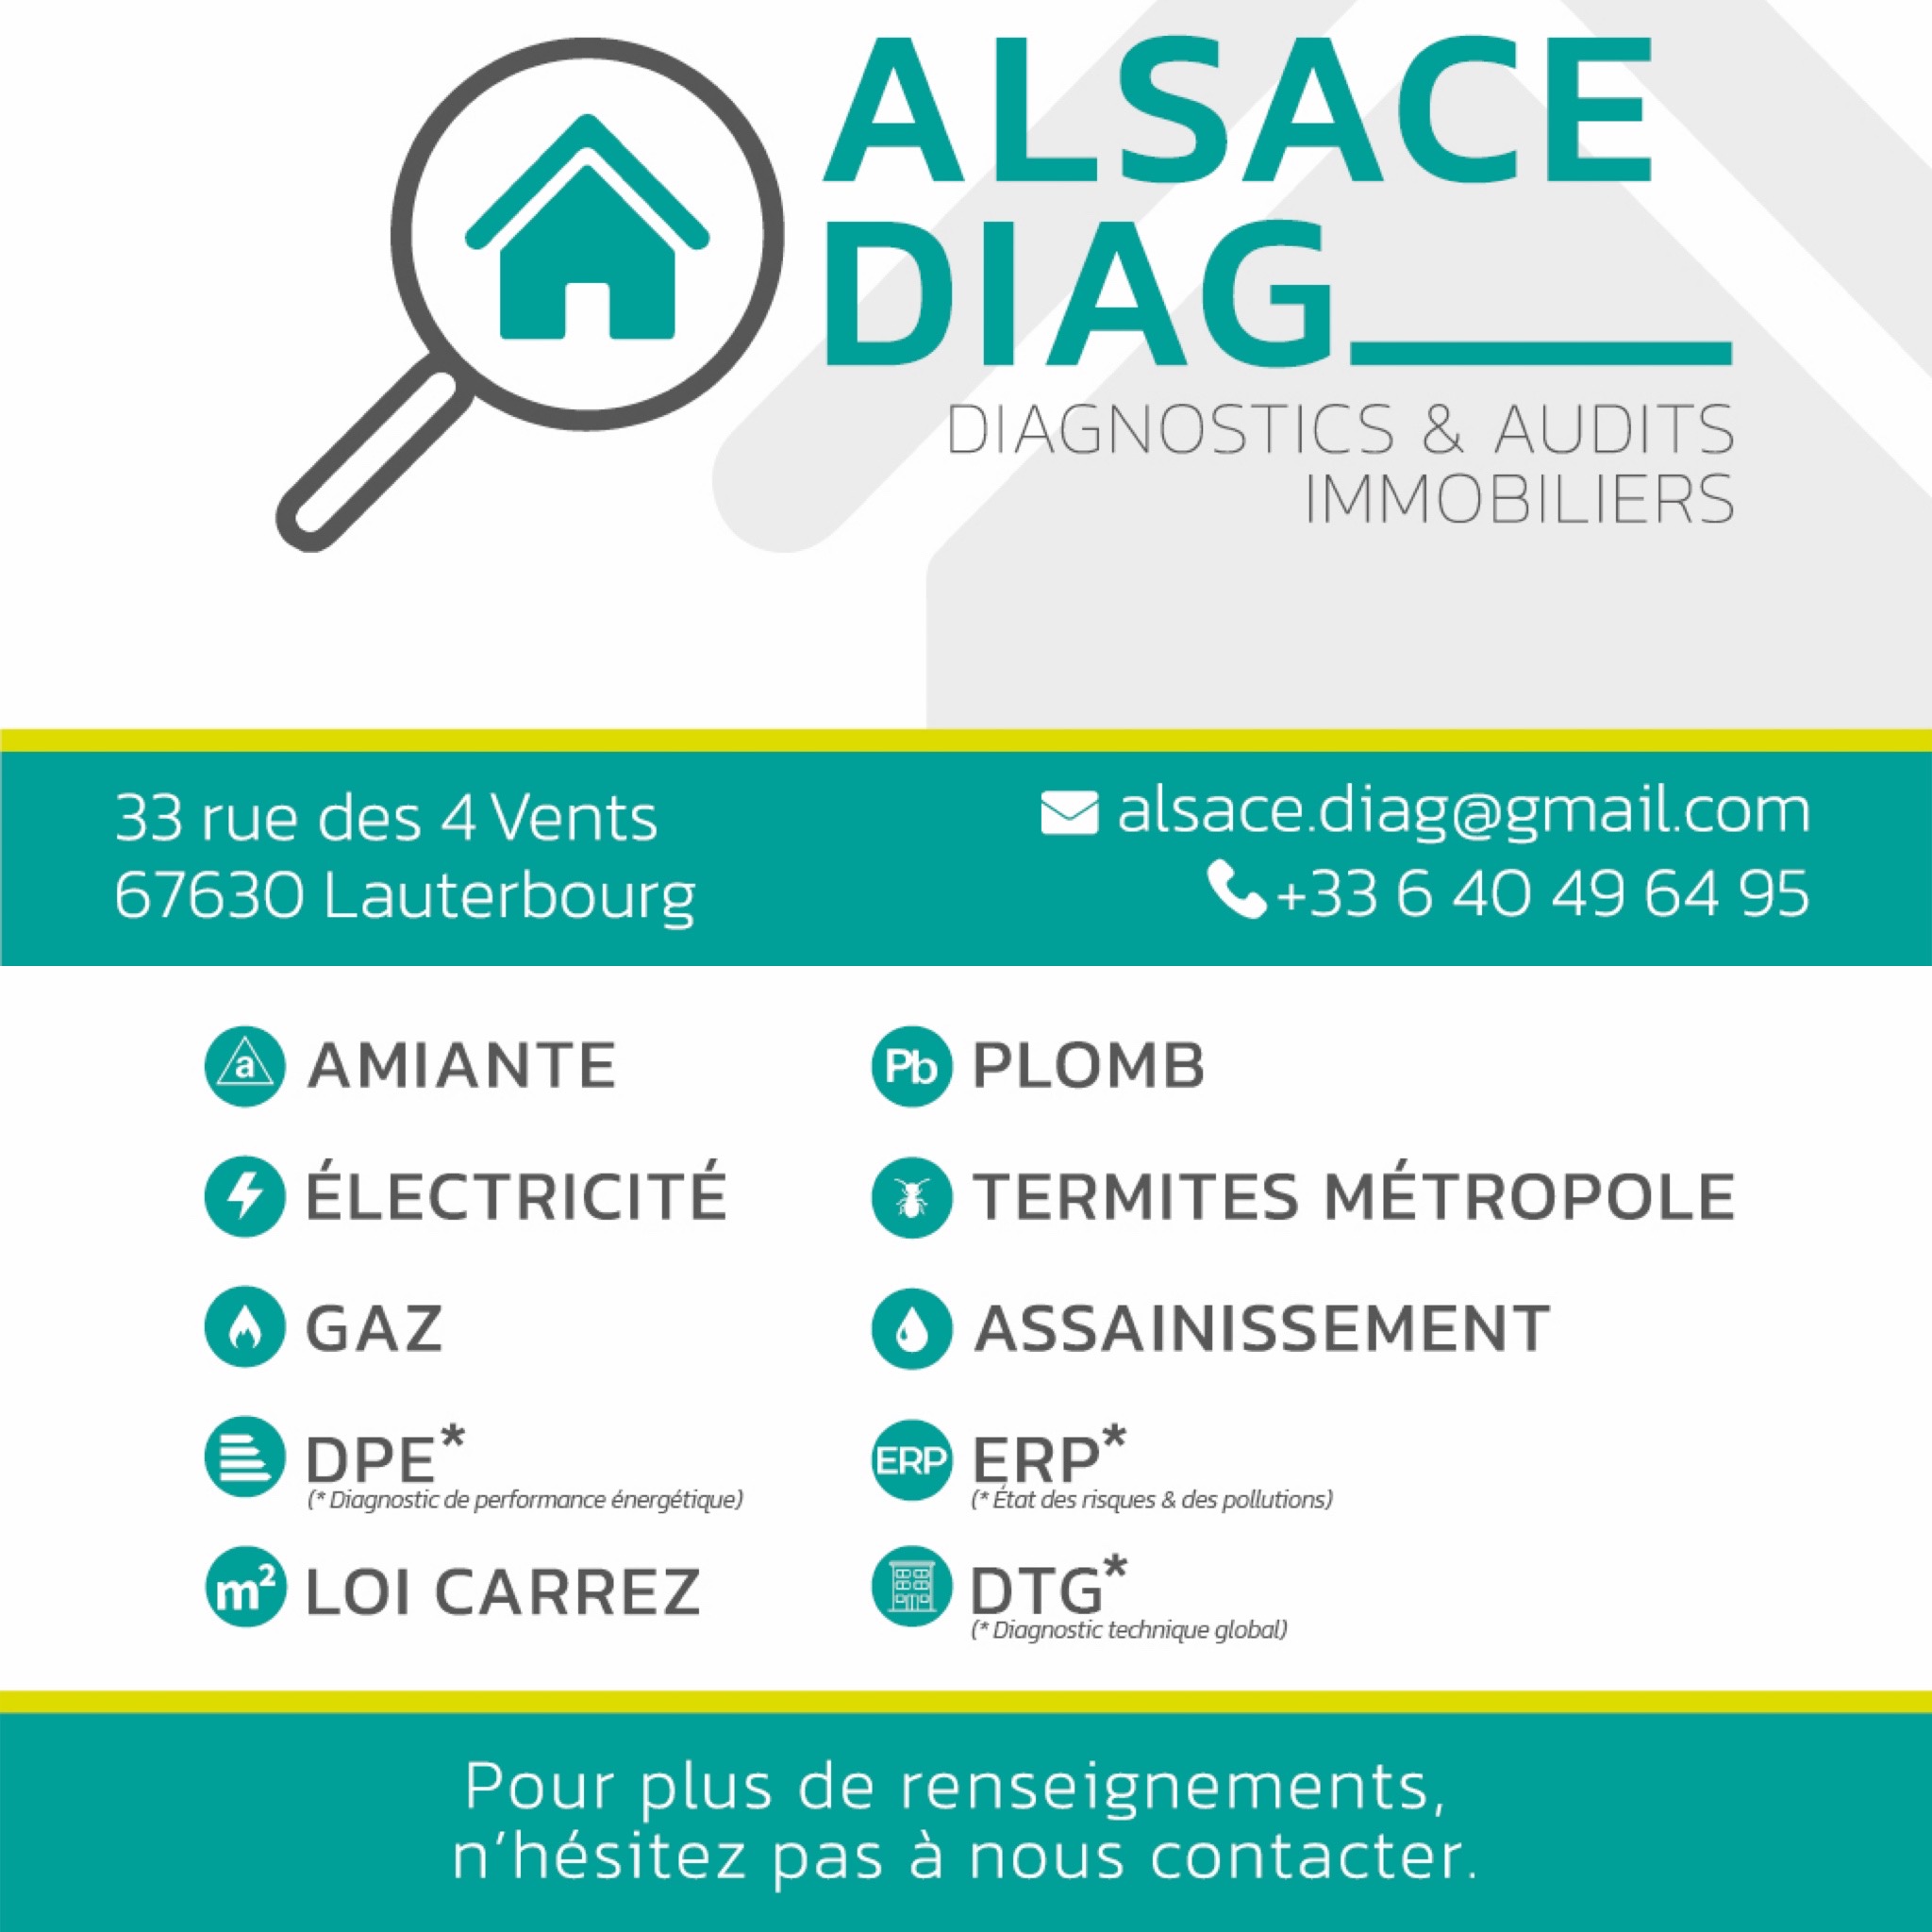 Alsace Diag